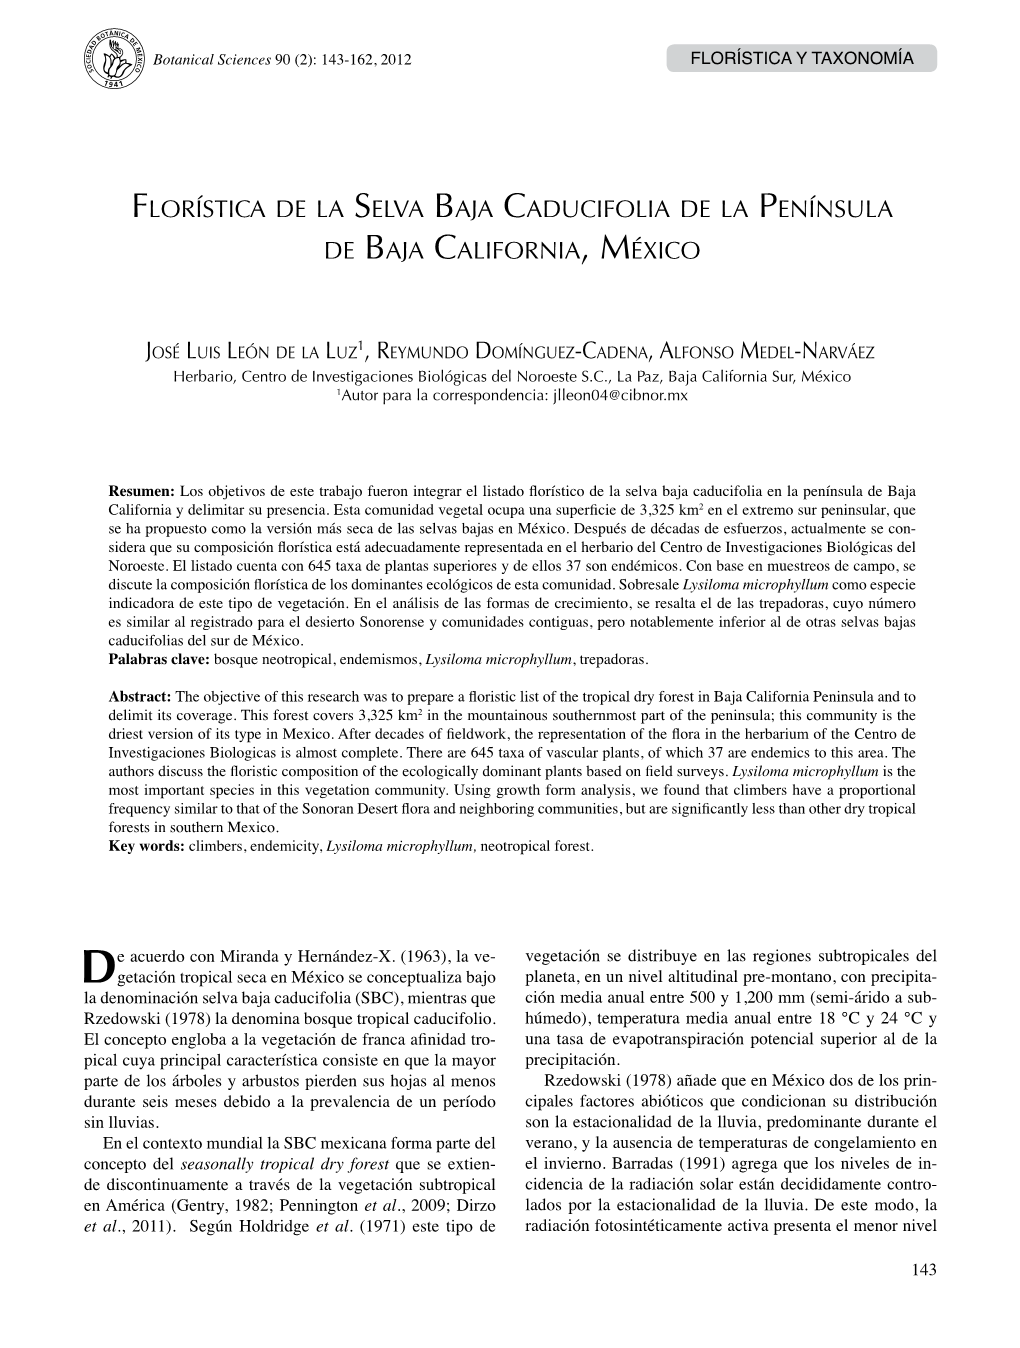 Florística De La Selva Baja Caducifolia De La Península De Baja California, México